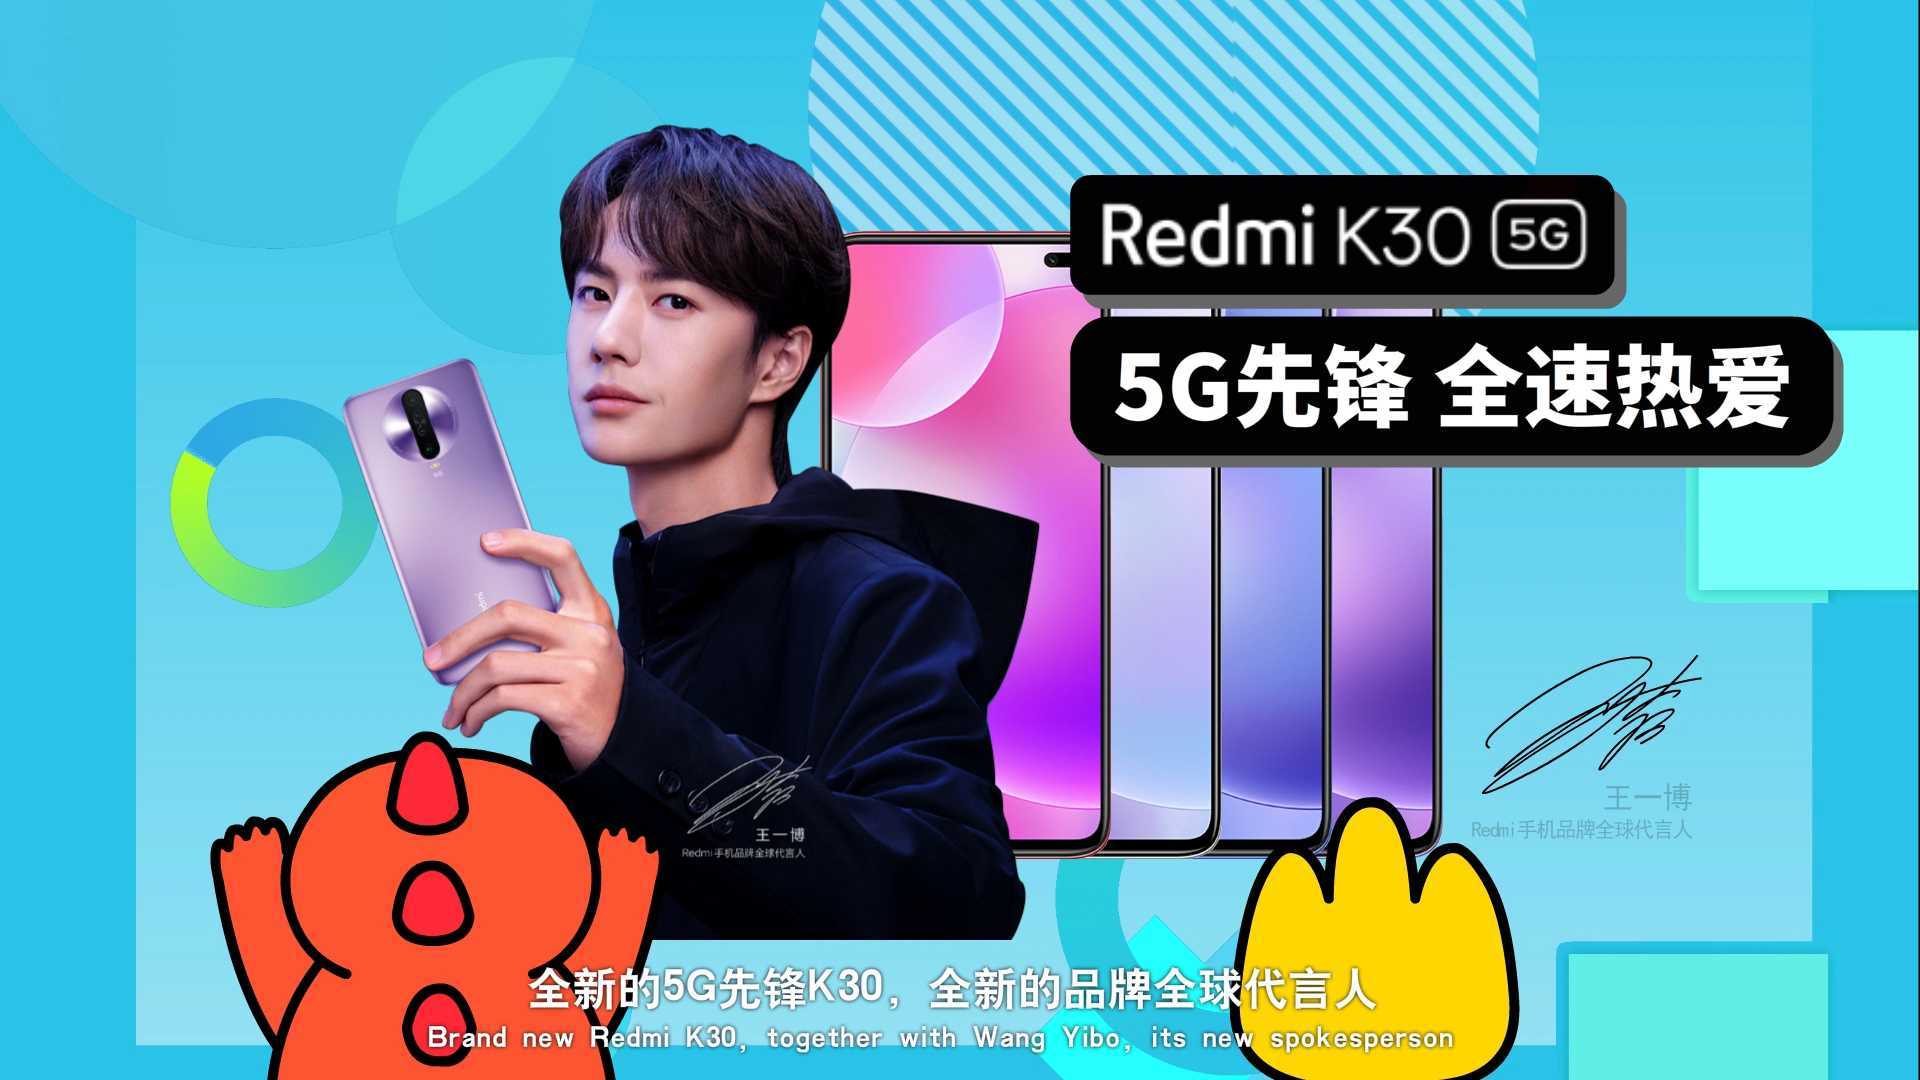 Redmi K30#王一博的K30#新浪热点营销MG动画